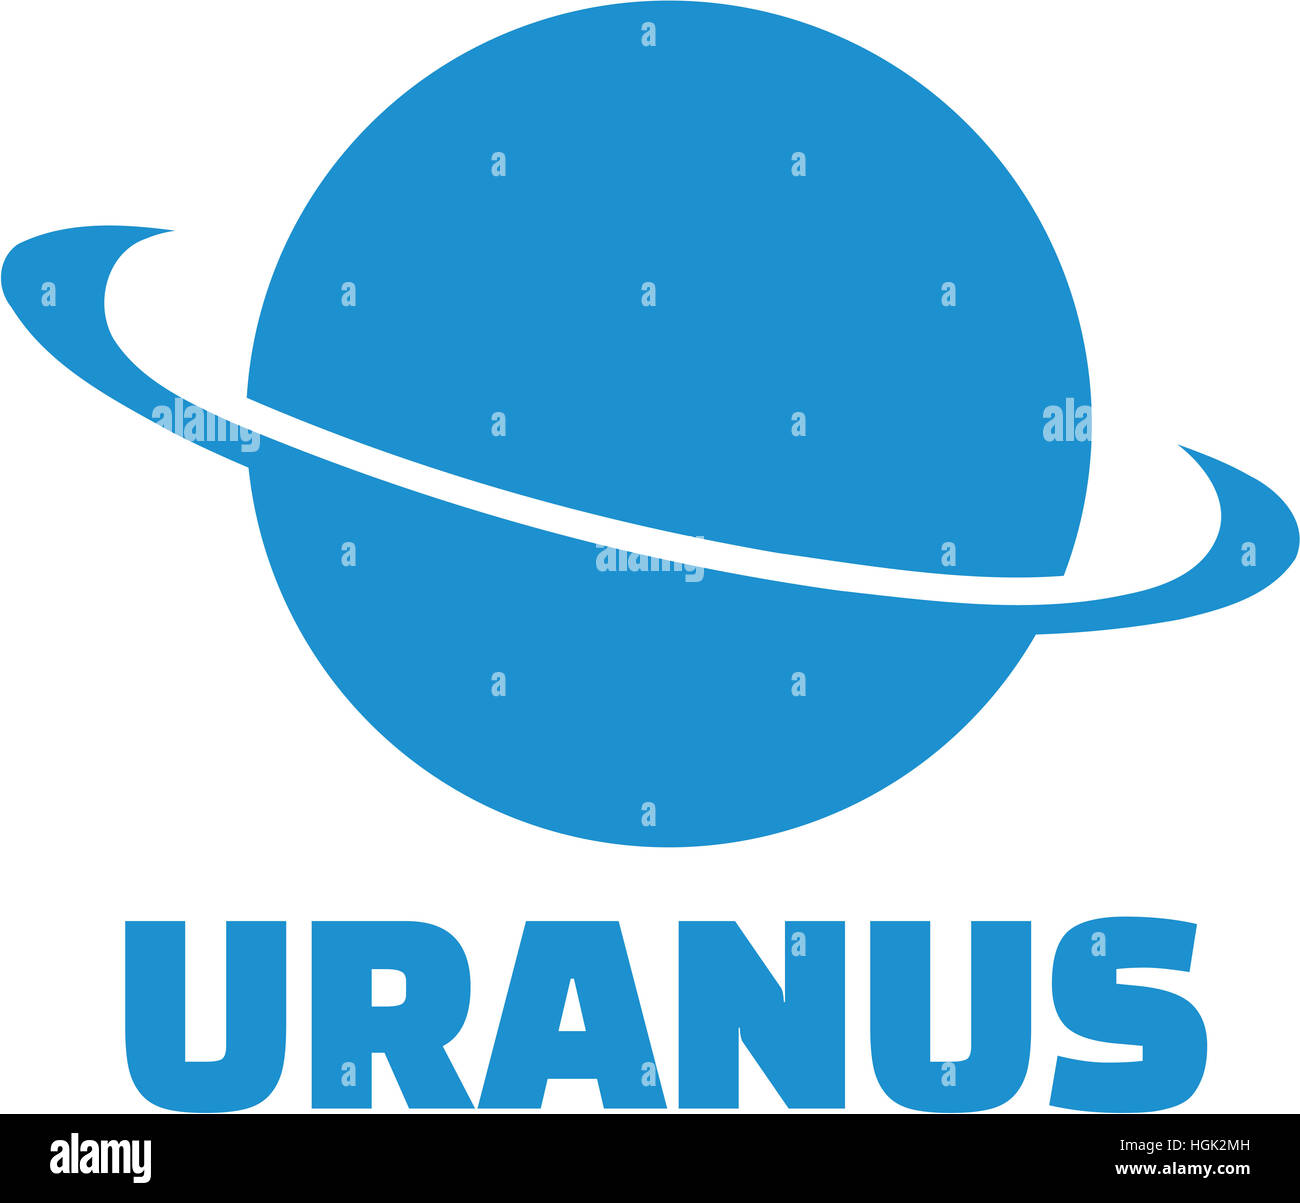 Uranus planet icon Stock Photo